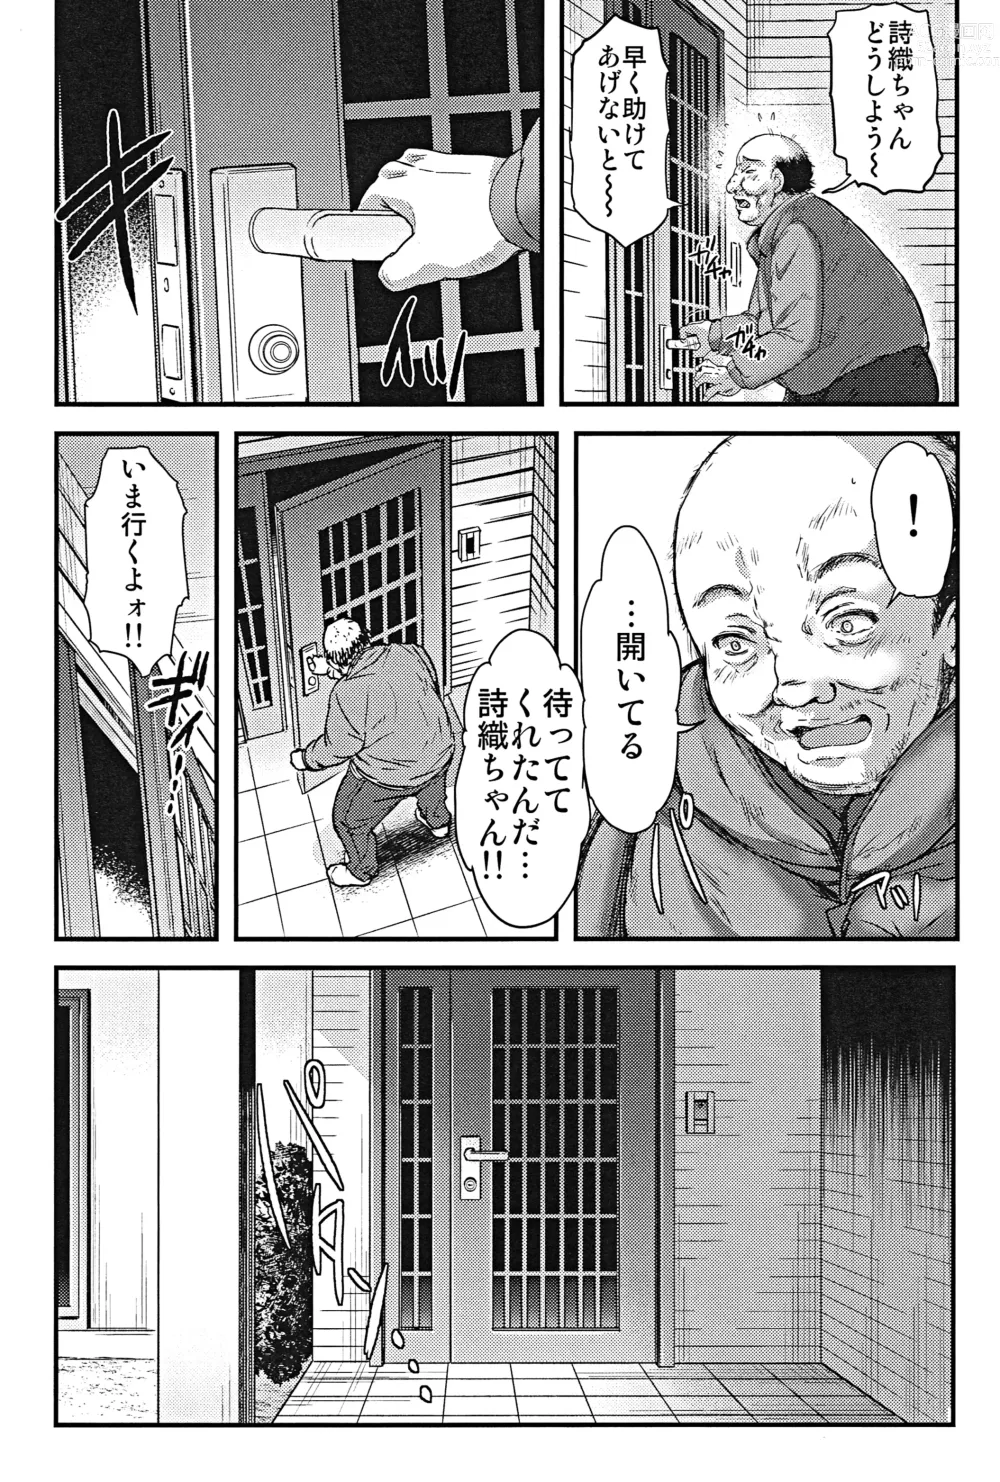 Page 19 of doujinshi Shiori Dai-Nijuunana-Shou Kago no Naka no Melancholic - Shiori Volume 27 The Melancholic In The Cage